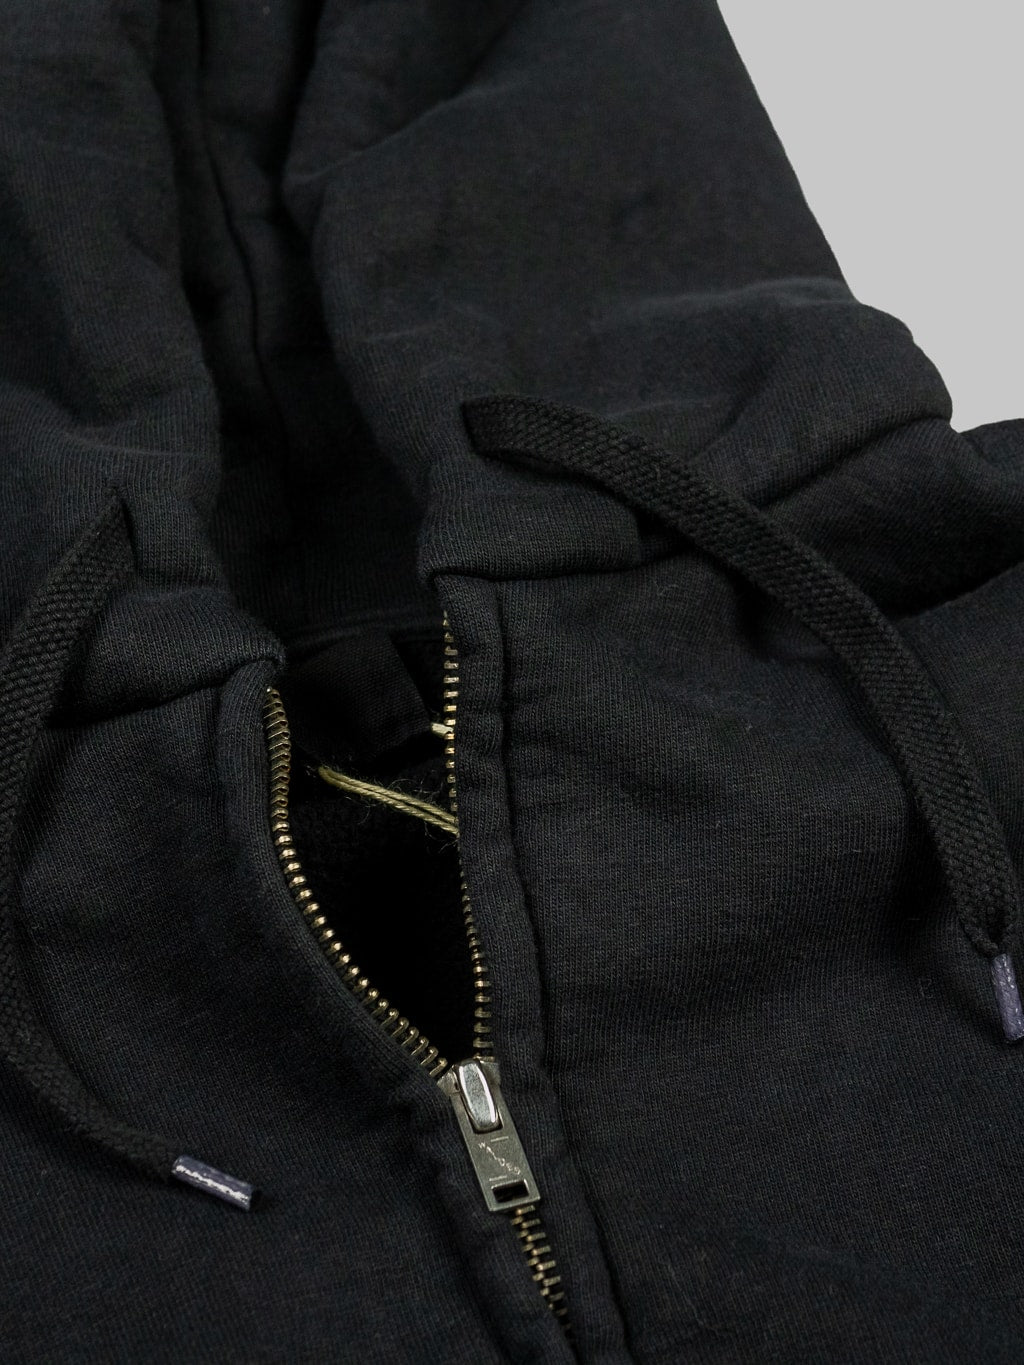 UES hoodie Zip Parka black waldes zip